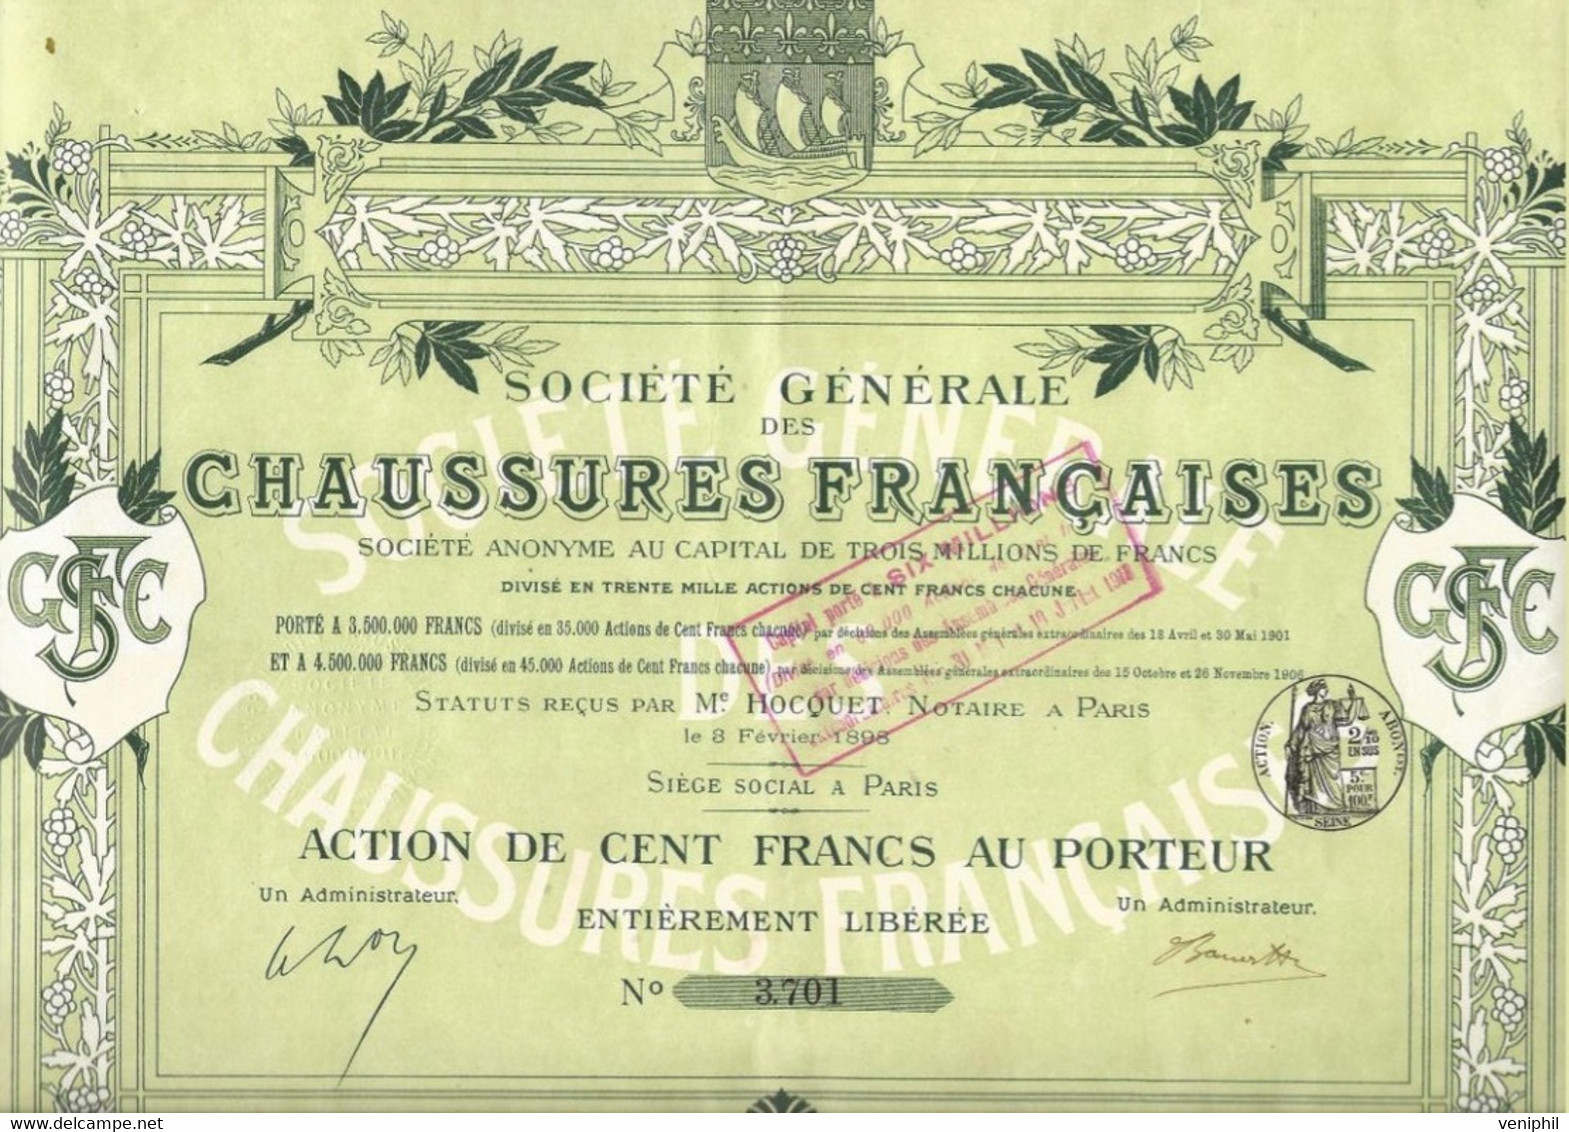 SOCIETE GENERALE DES CHAUSSURES FRANCAISES - ACTION DE CENT FRANCS - ANNEE 1898 - Textile